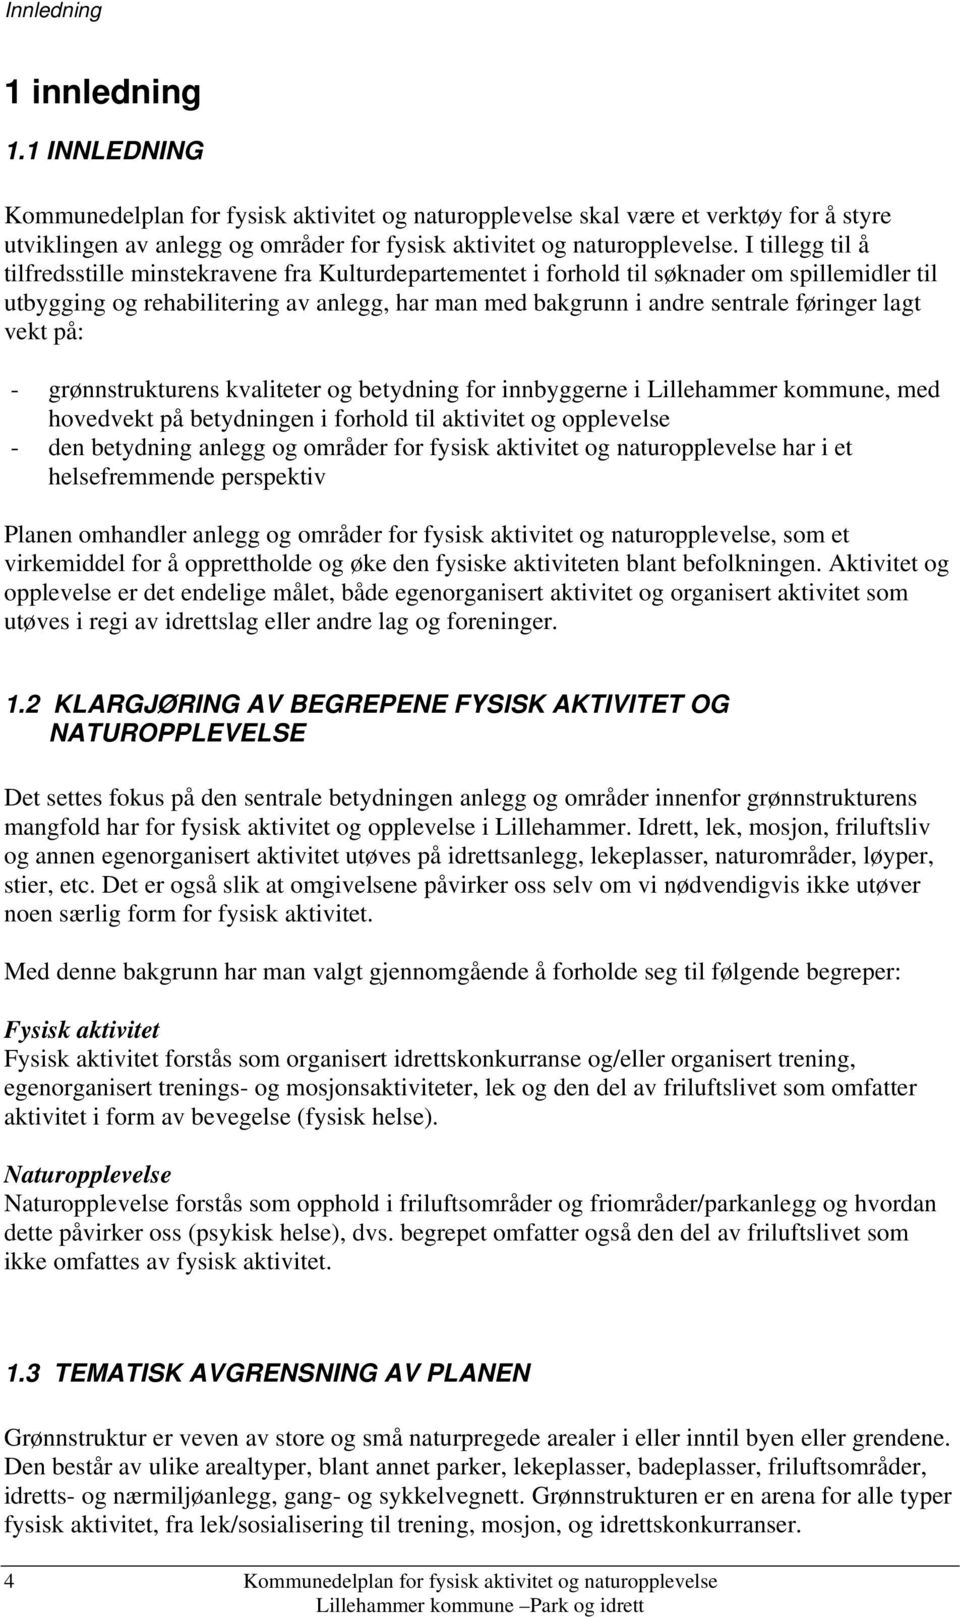 lagt vekt på: - grønnstrukturens kvaliteter og betydning for innbyggerne i Lillehammer kommune, med hovedvekt på betydningen i forhold til aktivitet og opplevelse - den betydning anlegg og områder